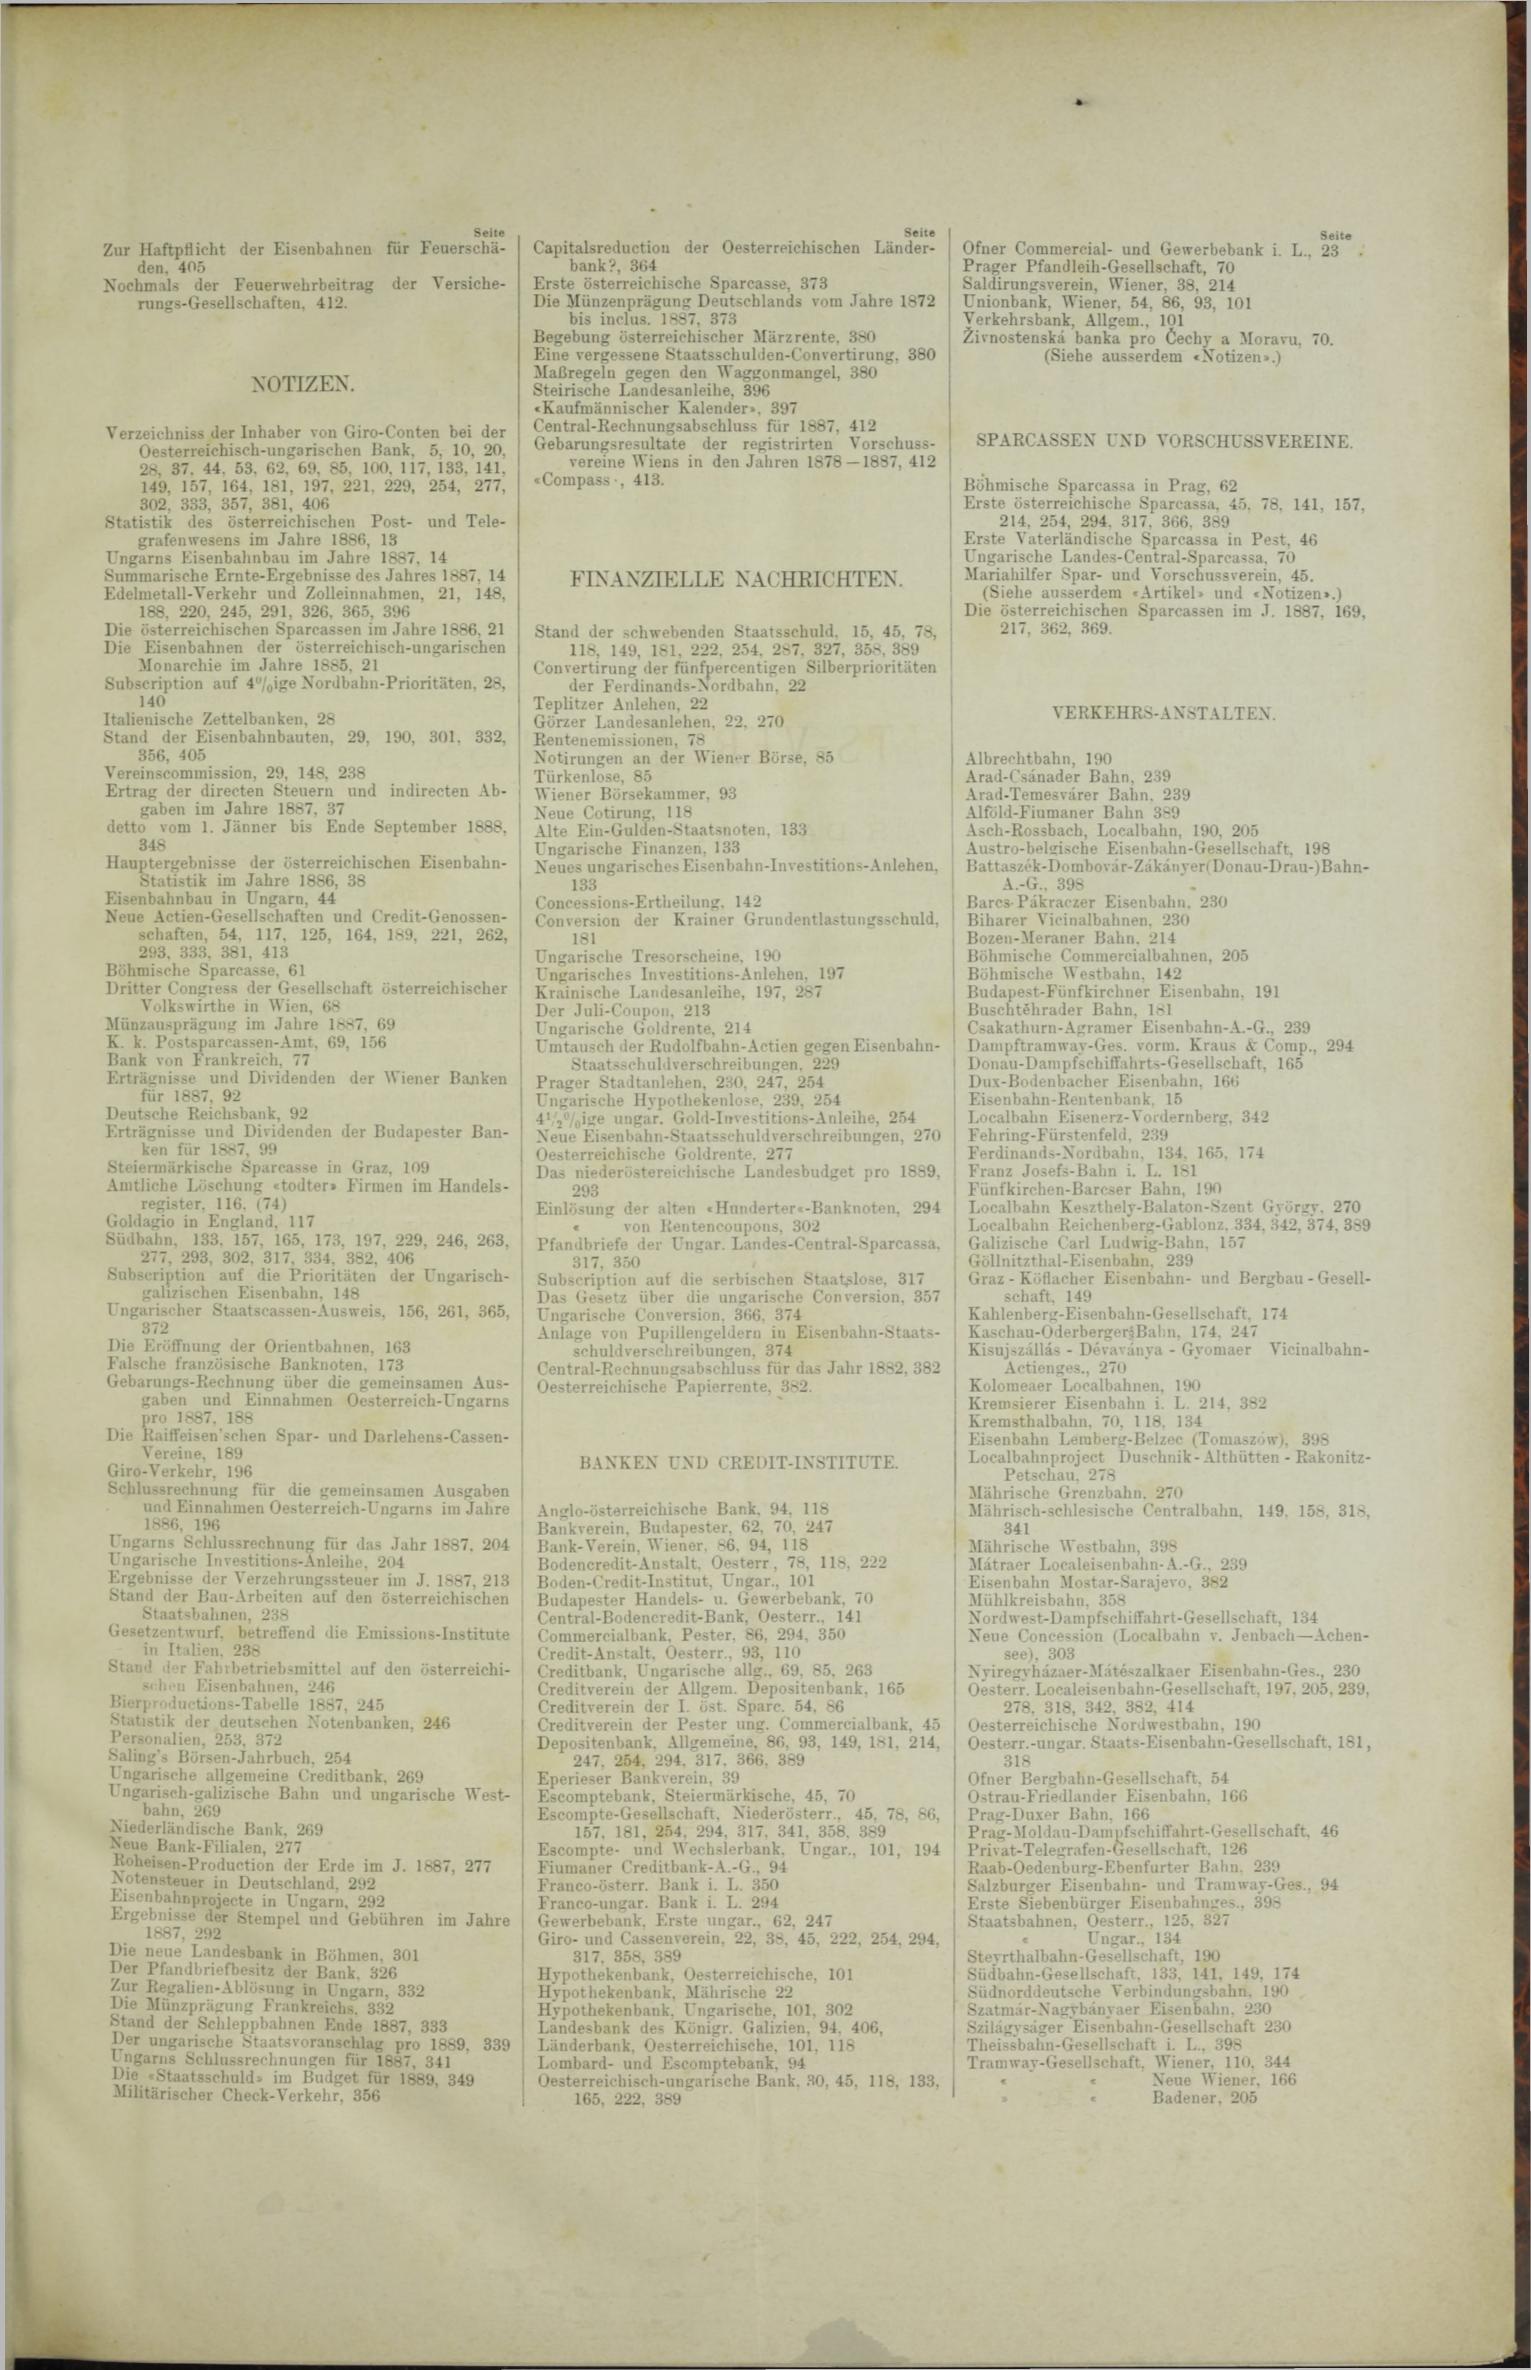 Der Tresor 22.03.1888 - Seite 11